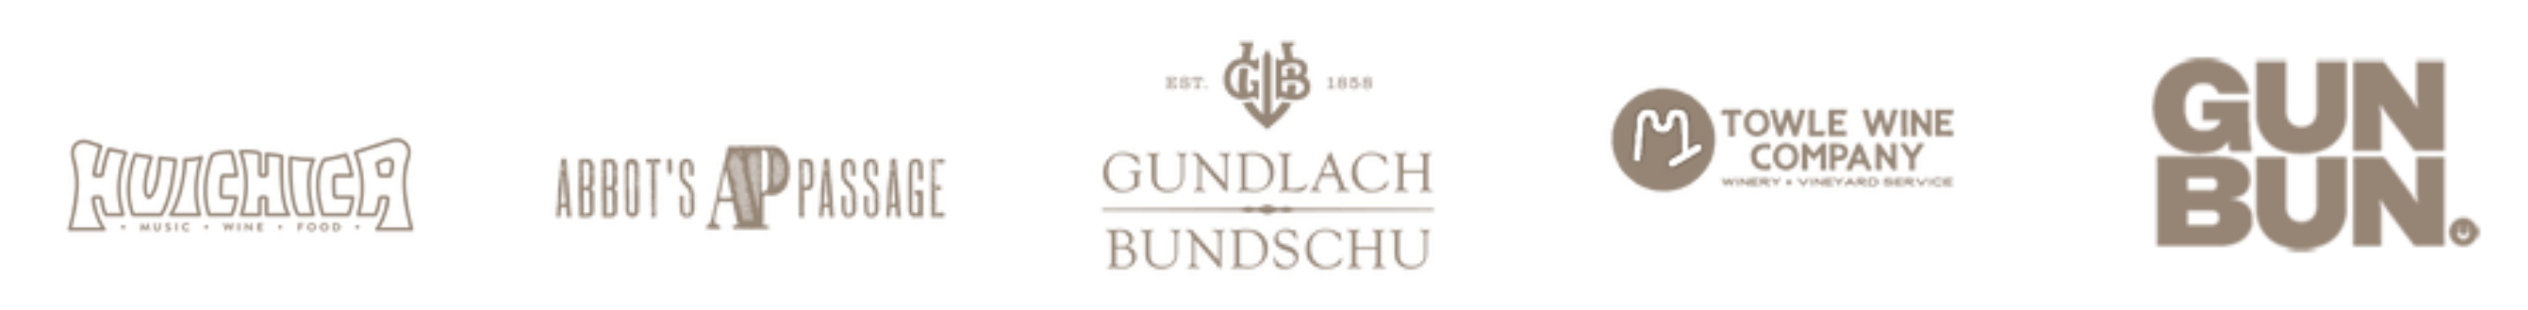 Bundschu Co brand logos